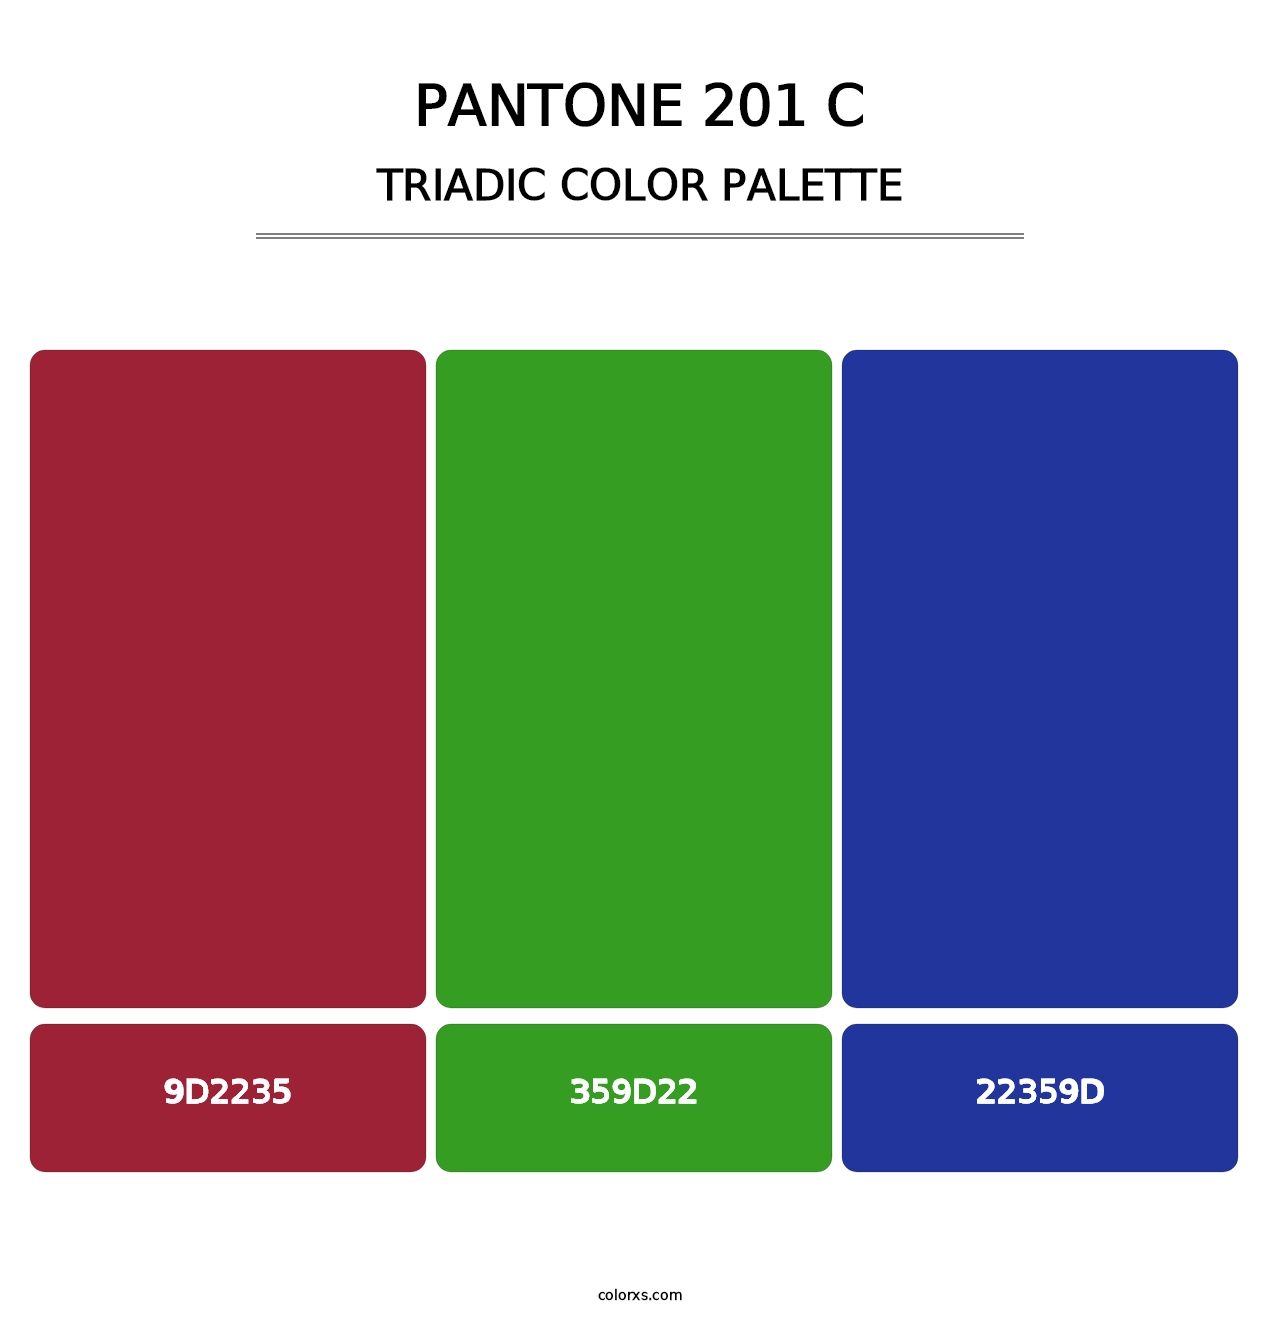 PANTONE 201 C - Triadic Color Palette